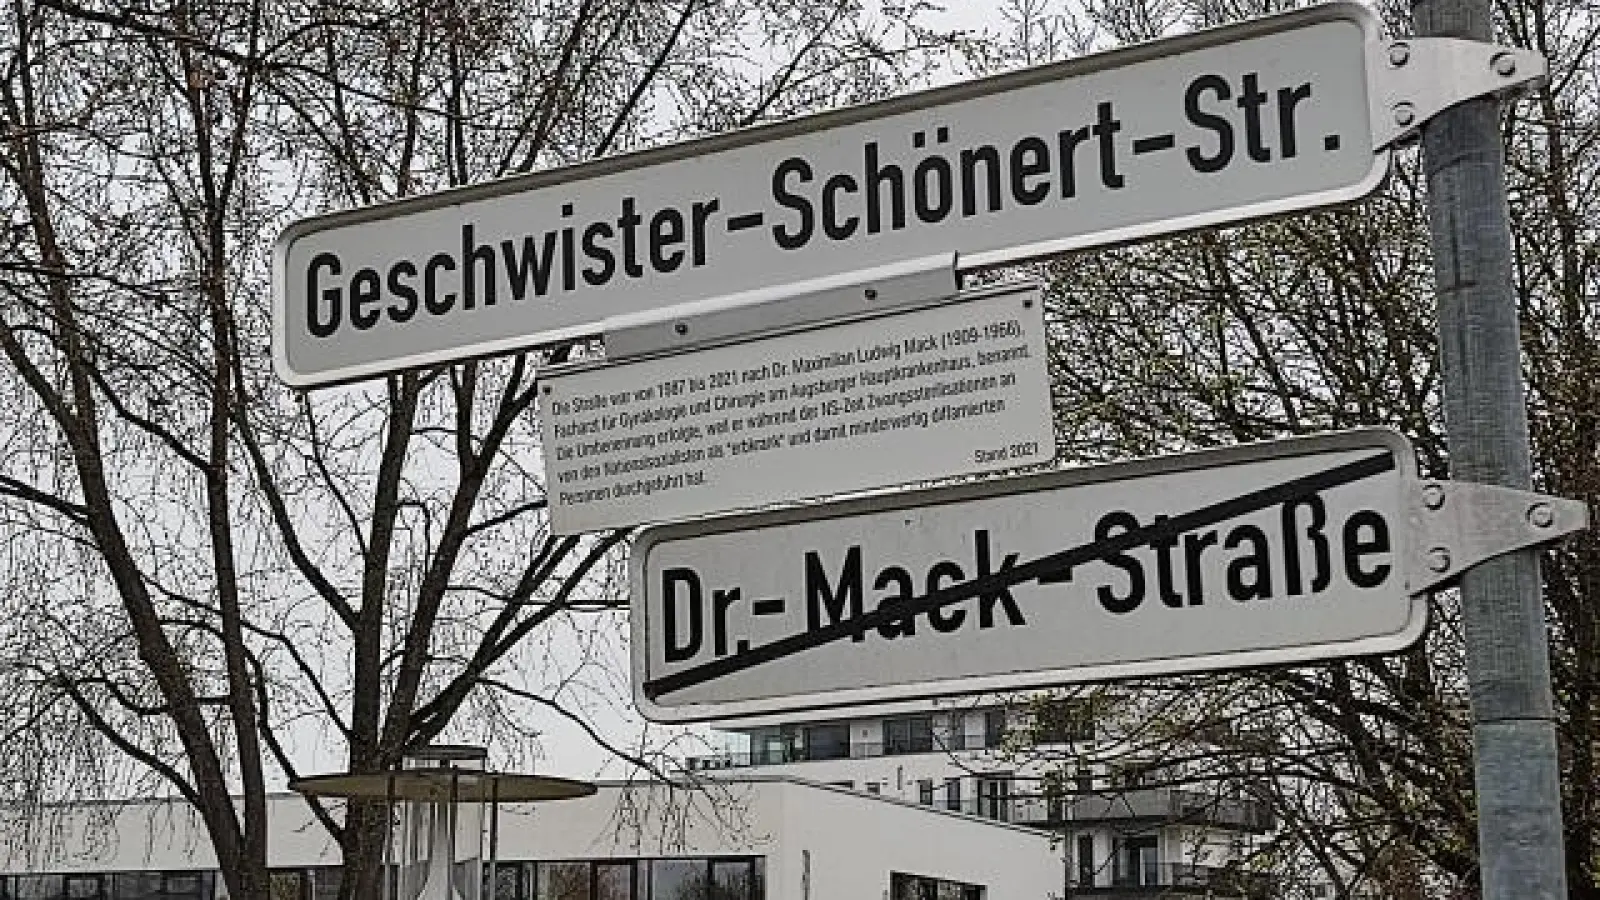 In Augsburg sind bereits einige Straßen   umbenannt und mit Infotafeln versehen worden. Die ehemalige Dr.-Mack-Straße heißt nun offiziell Geschwister-Schönert-Straße. 	Foto: Kristin Deibl (Foto: Kristin Deibl)